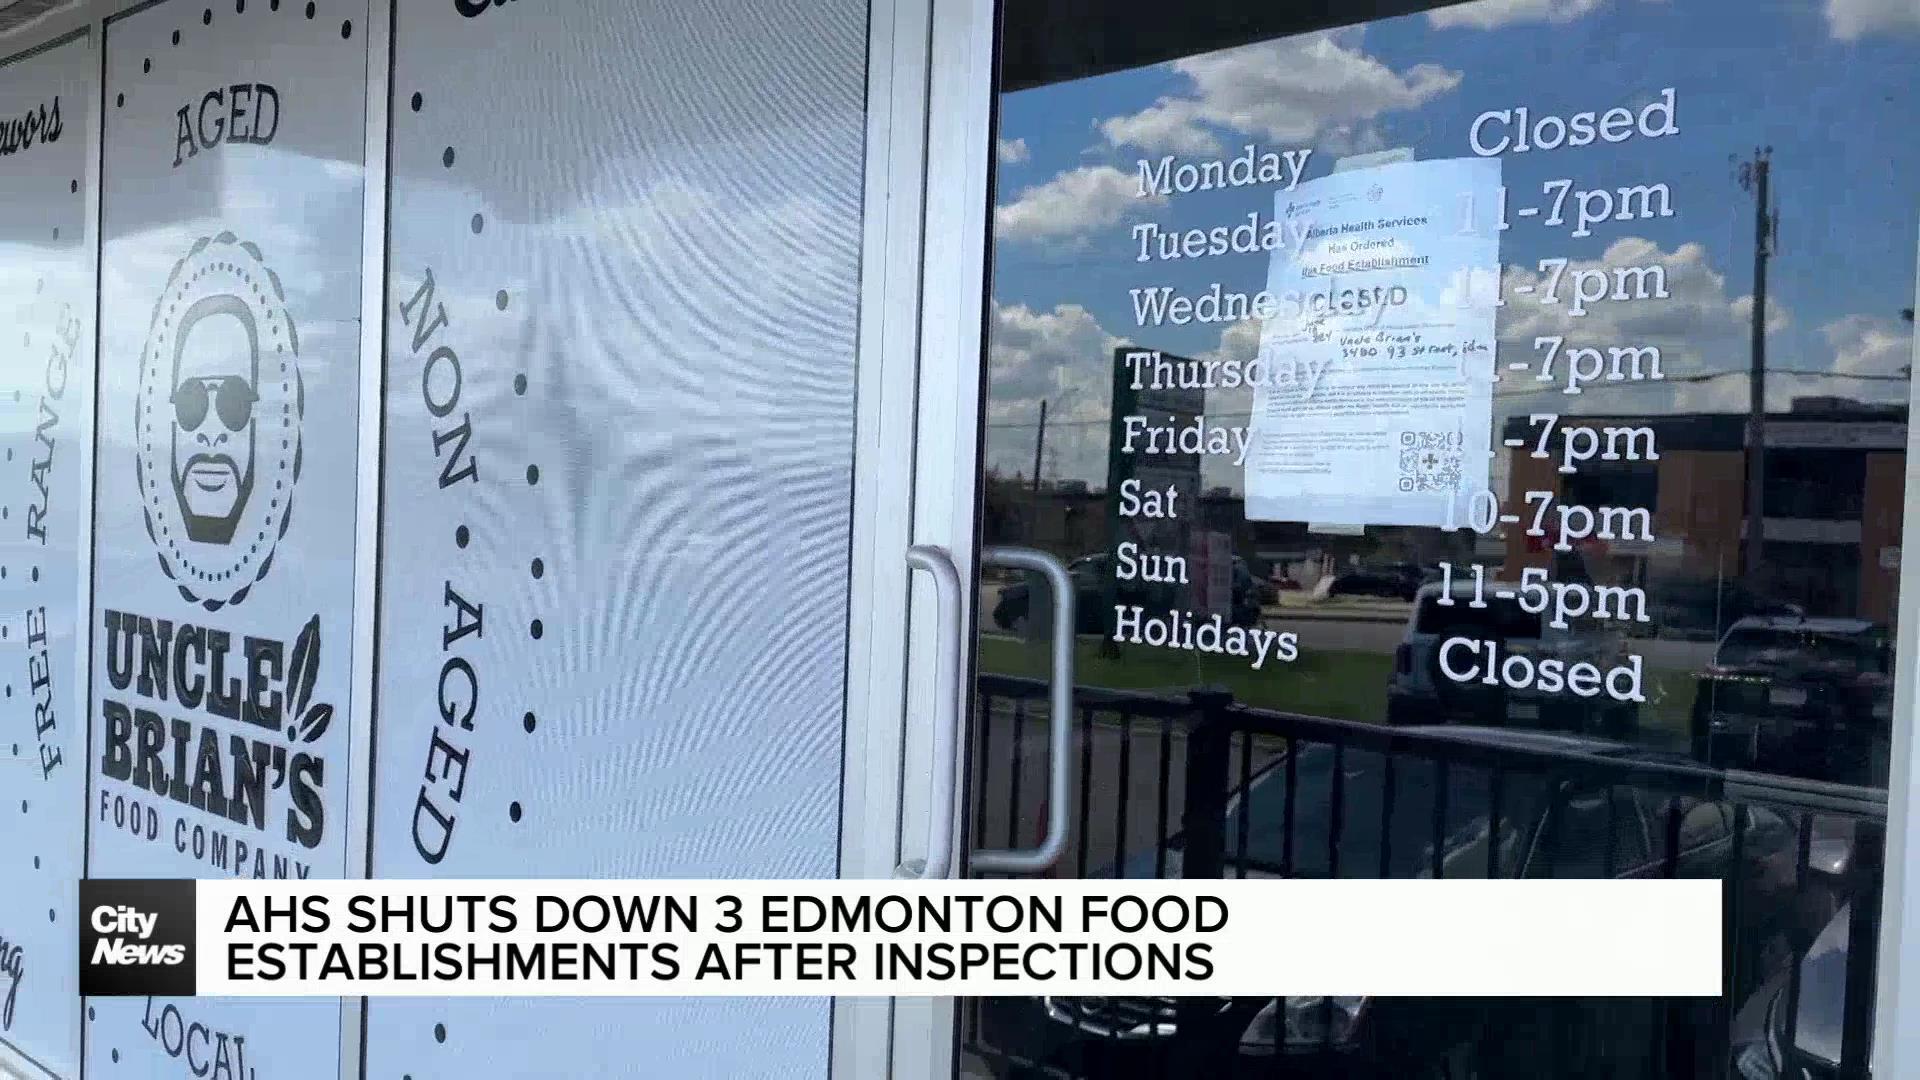 AHS shuts down 3 Edmonton food establishments after inspections